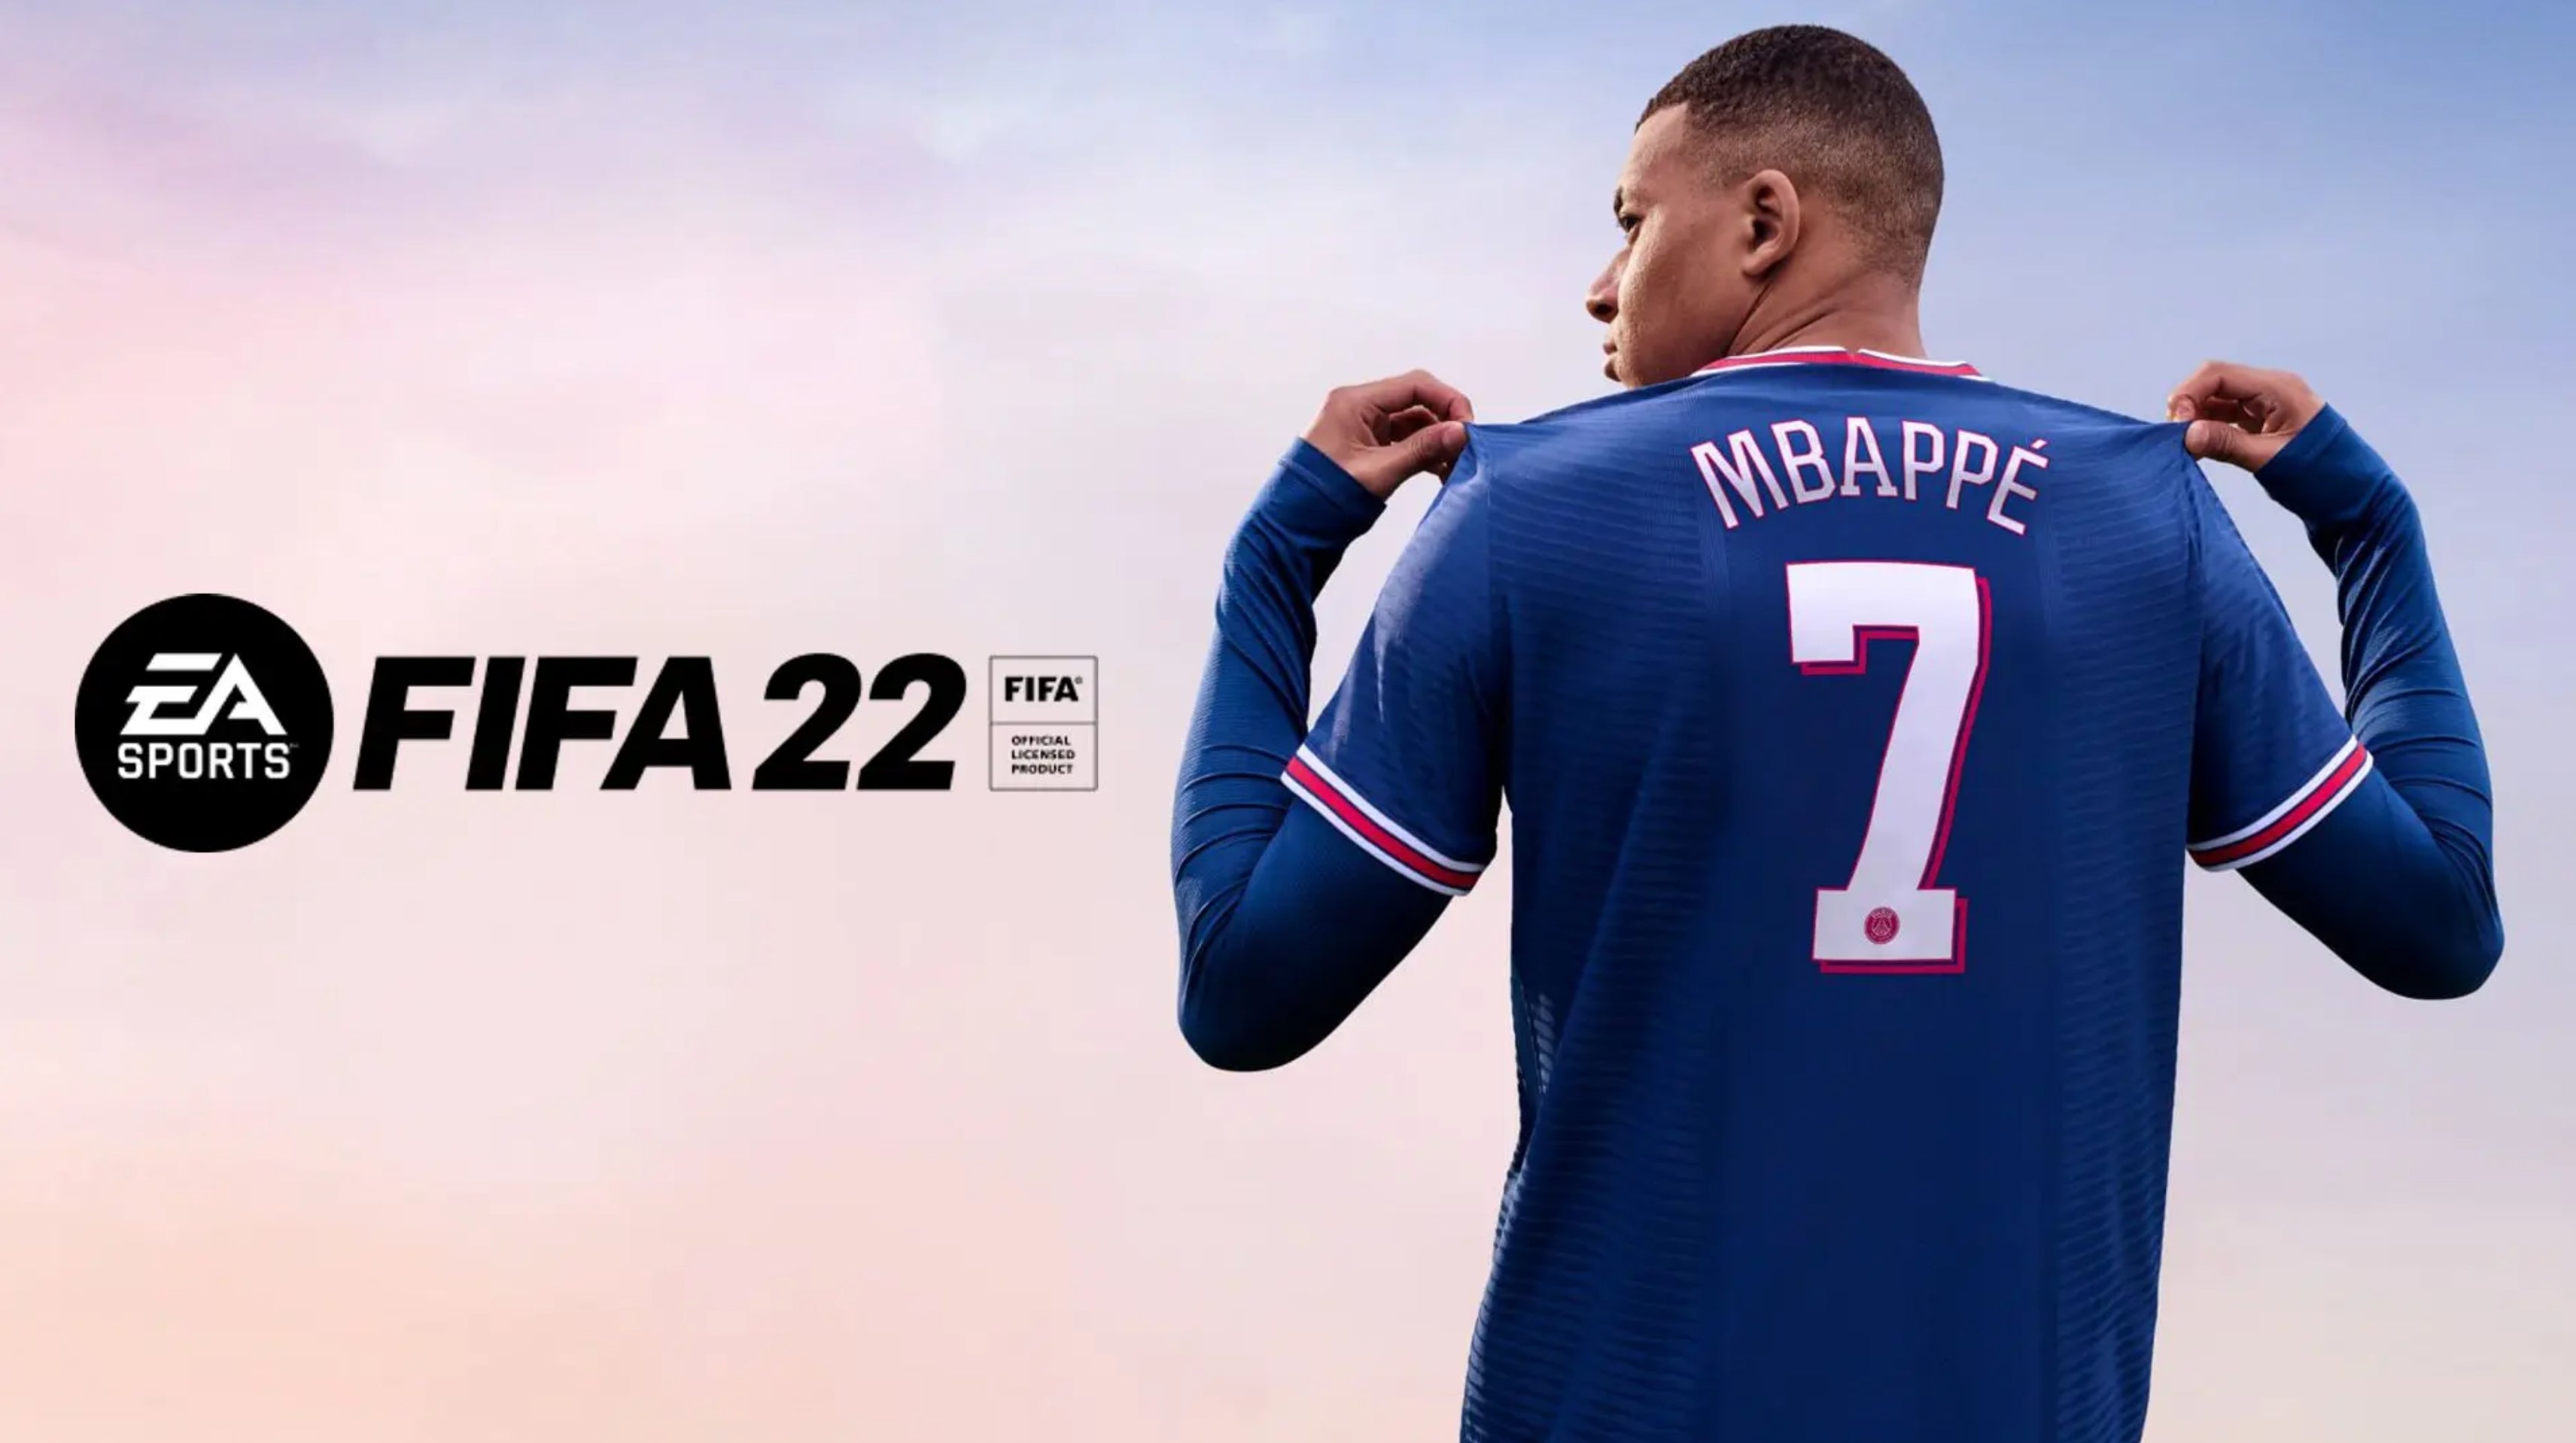 Imagen para Ventas UK: FIFA 22 entra en el número 1 con el mejor lanzamiento del año